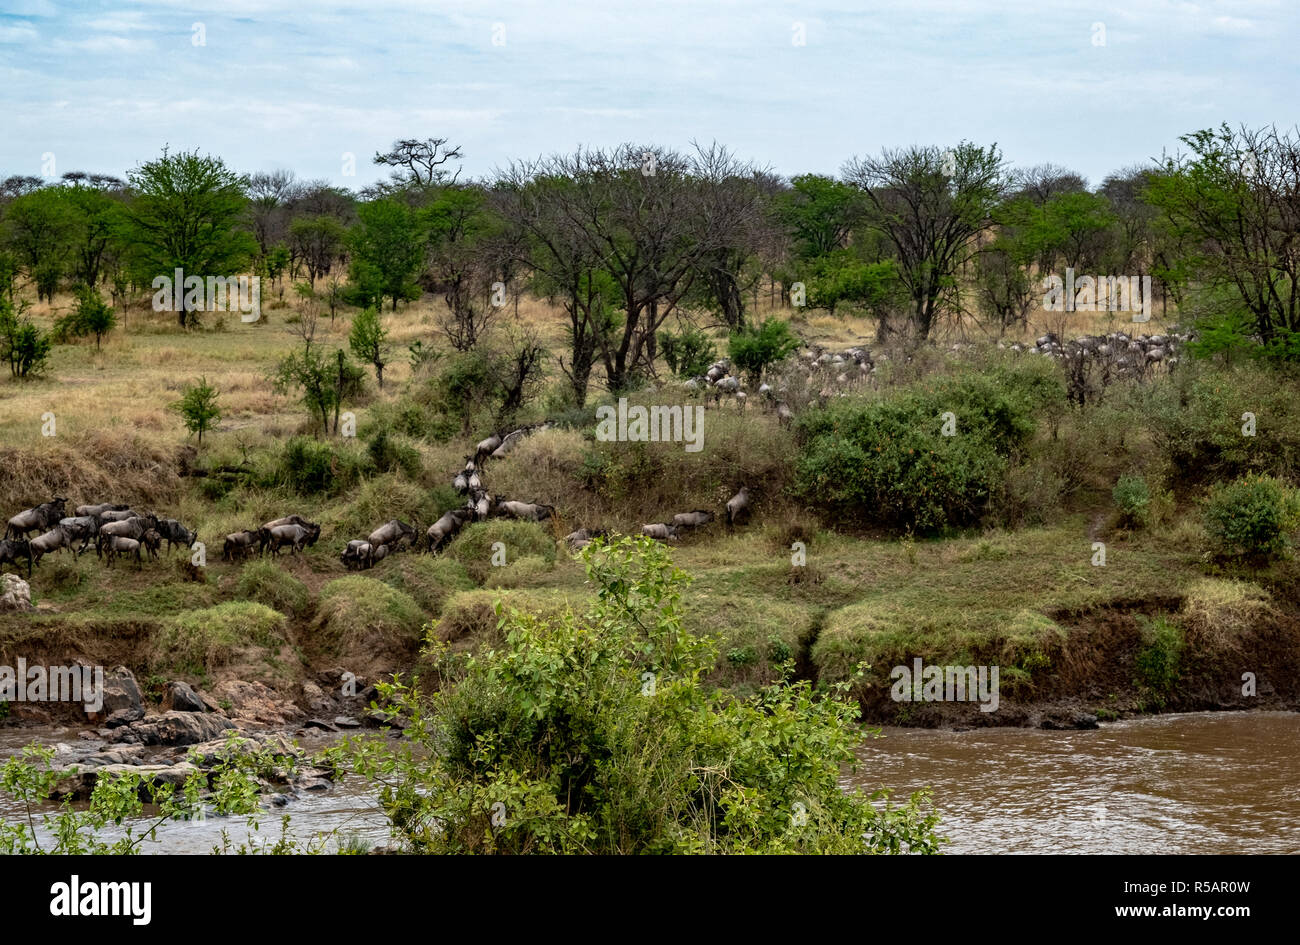 Troupeau de gnous croosing la rivière Mara séparant la Tanzanie et le Kenya dans un rituel annuel migration de milliers d'animaux Banque D'Images